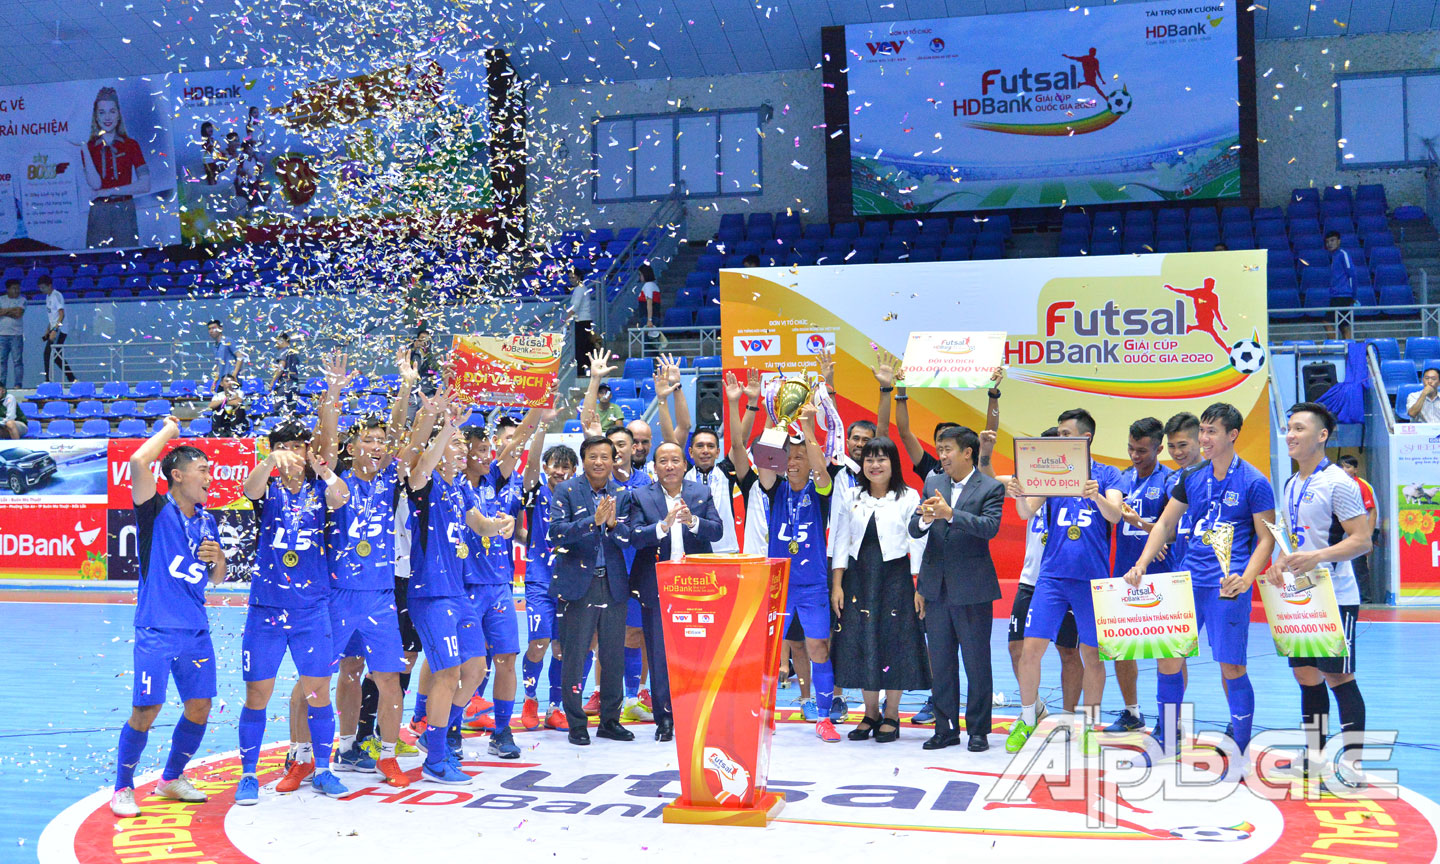 Thái Sơn Nam đoạt Cúp quốc gia, hoàn tất cú đúp danh hiệu tại mùa giải futsal 2020.